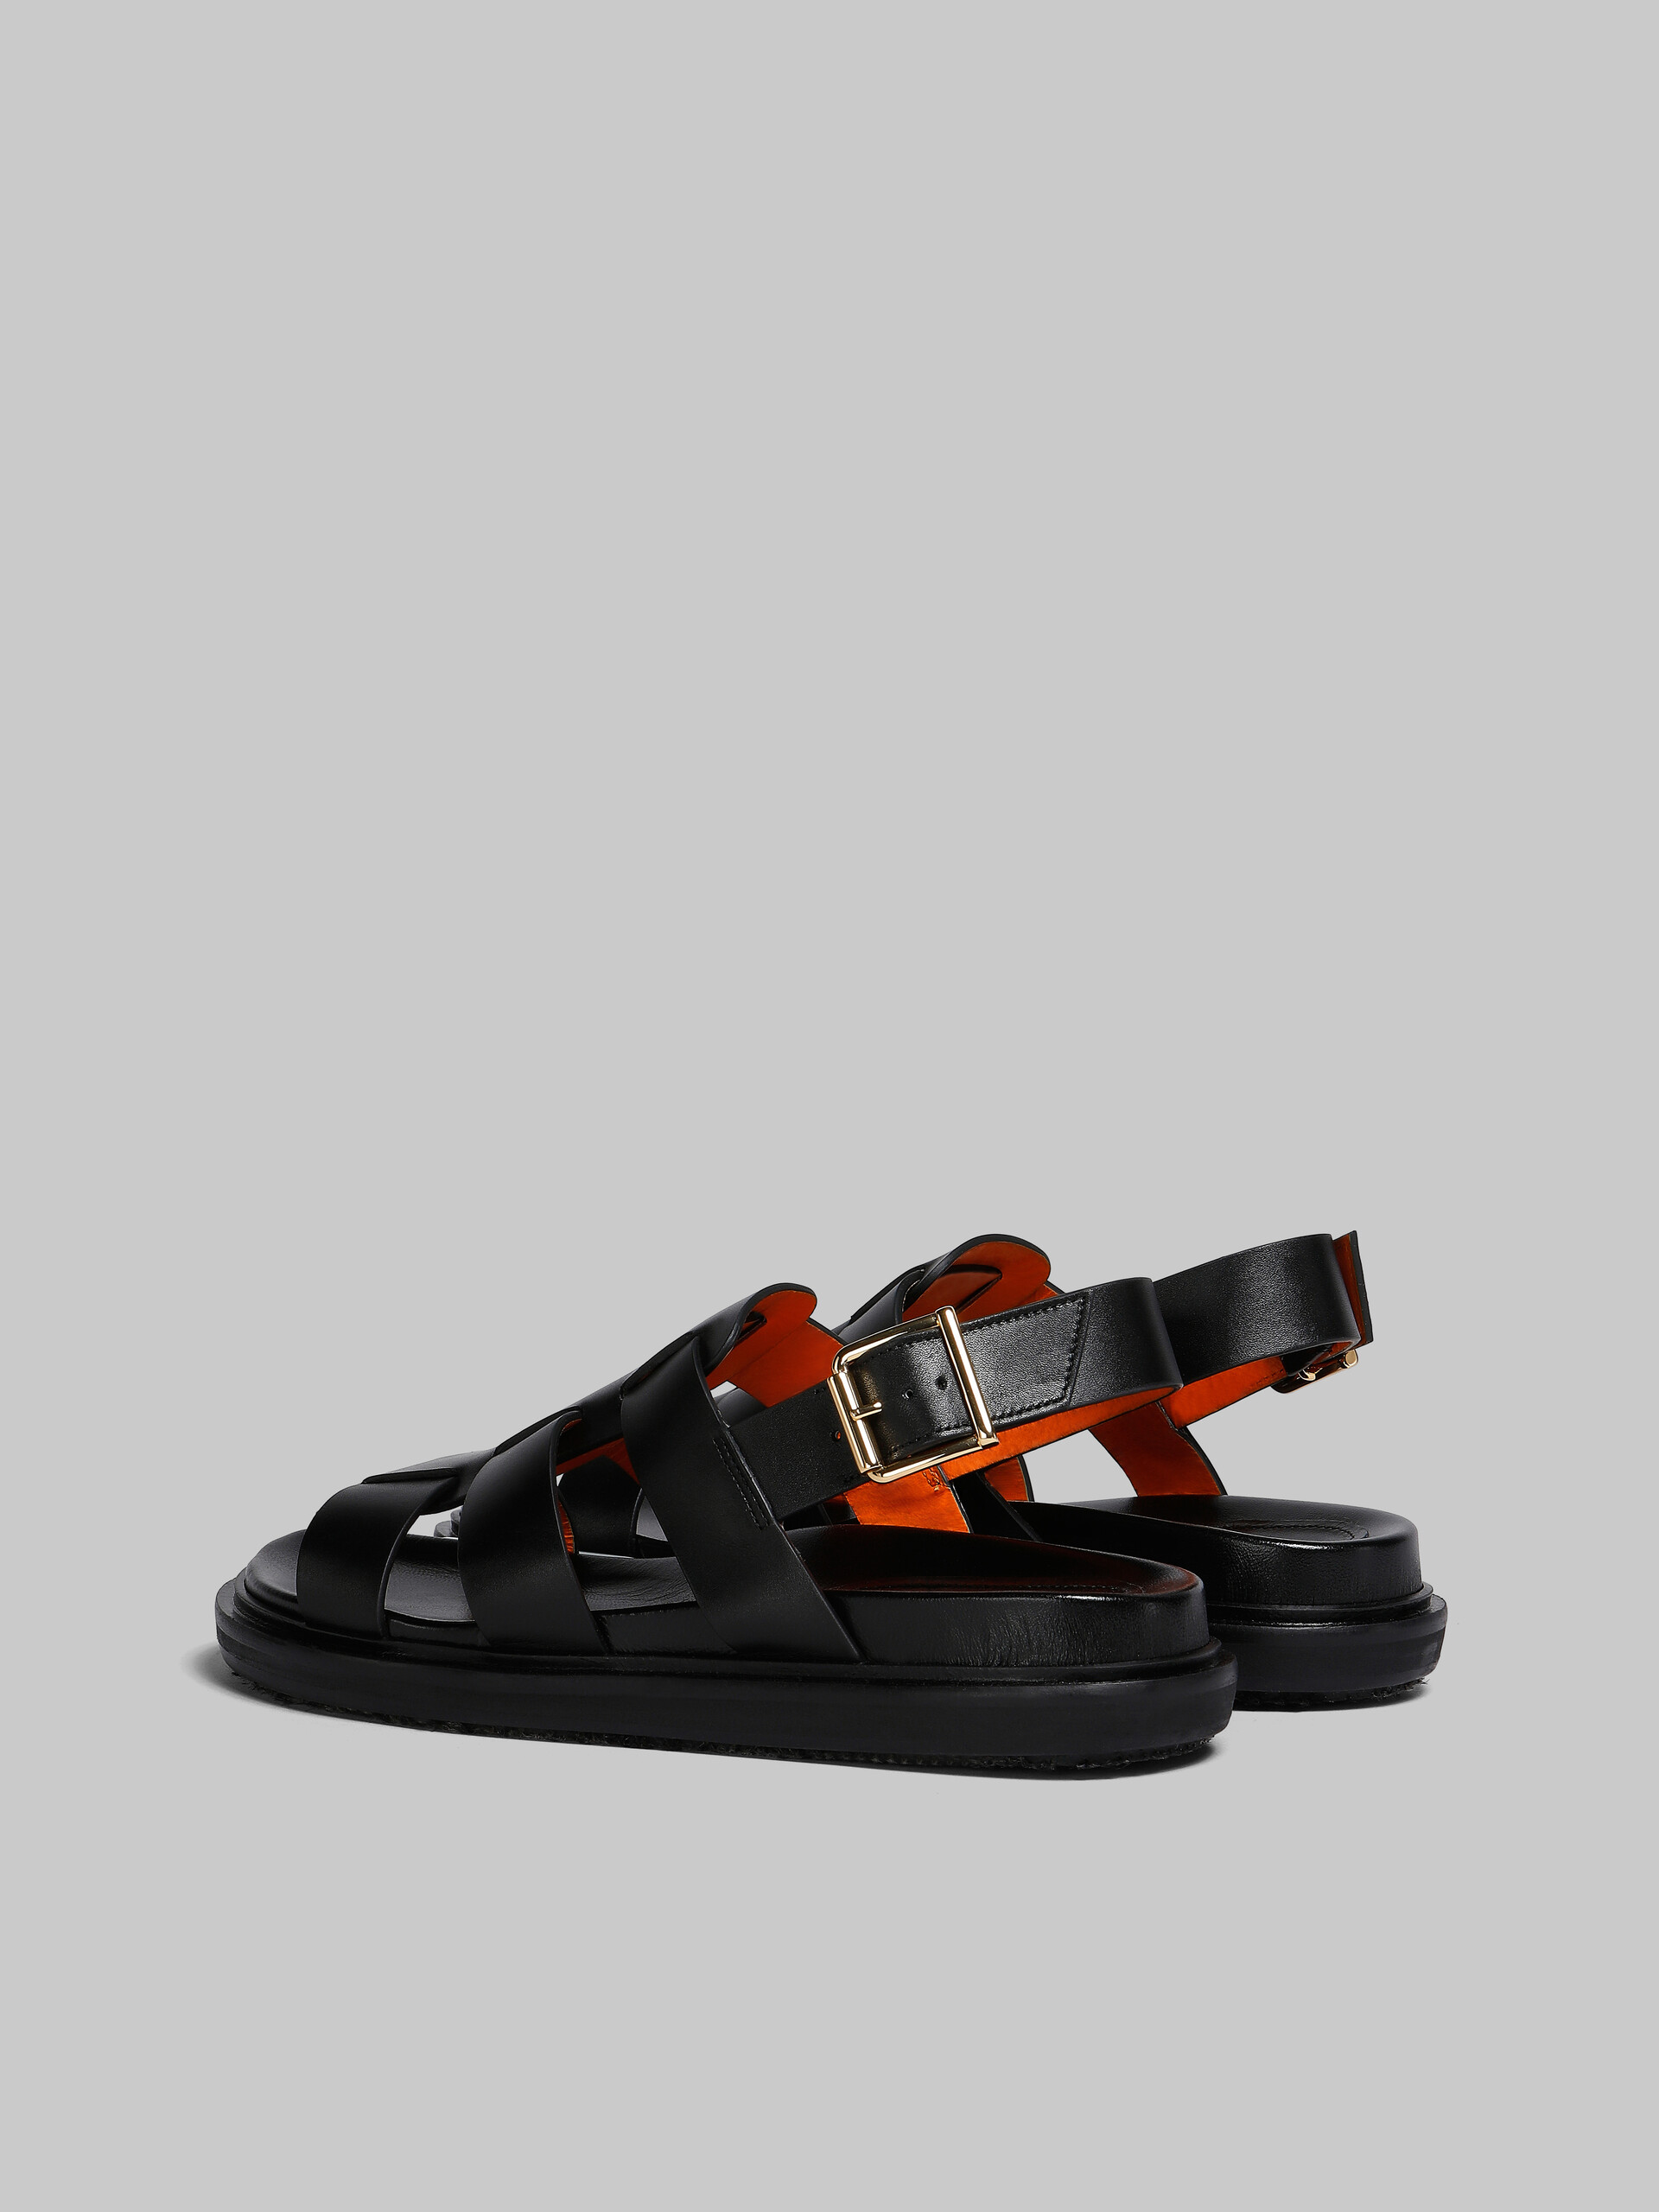 Black leather gladiator sandal - Sandals - Image 3